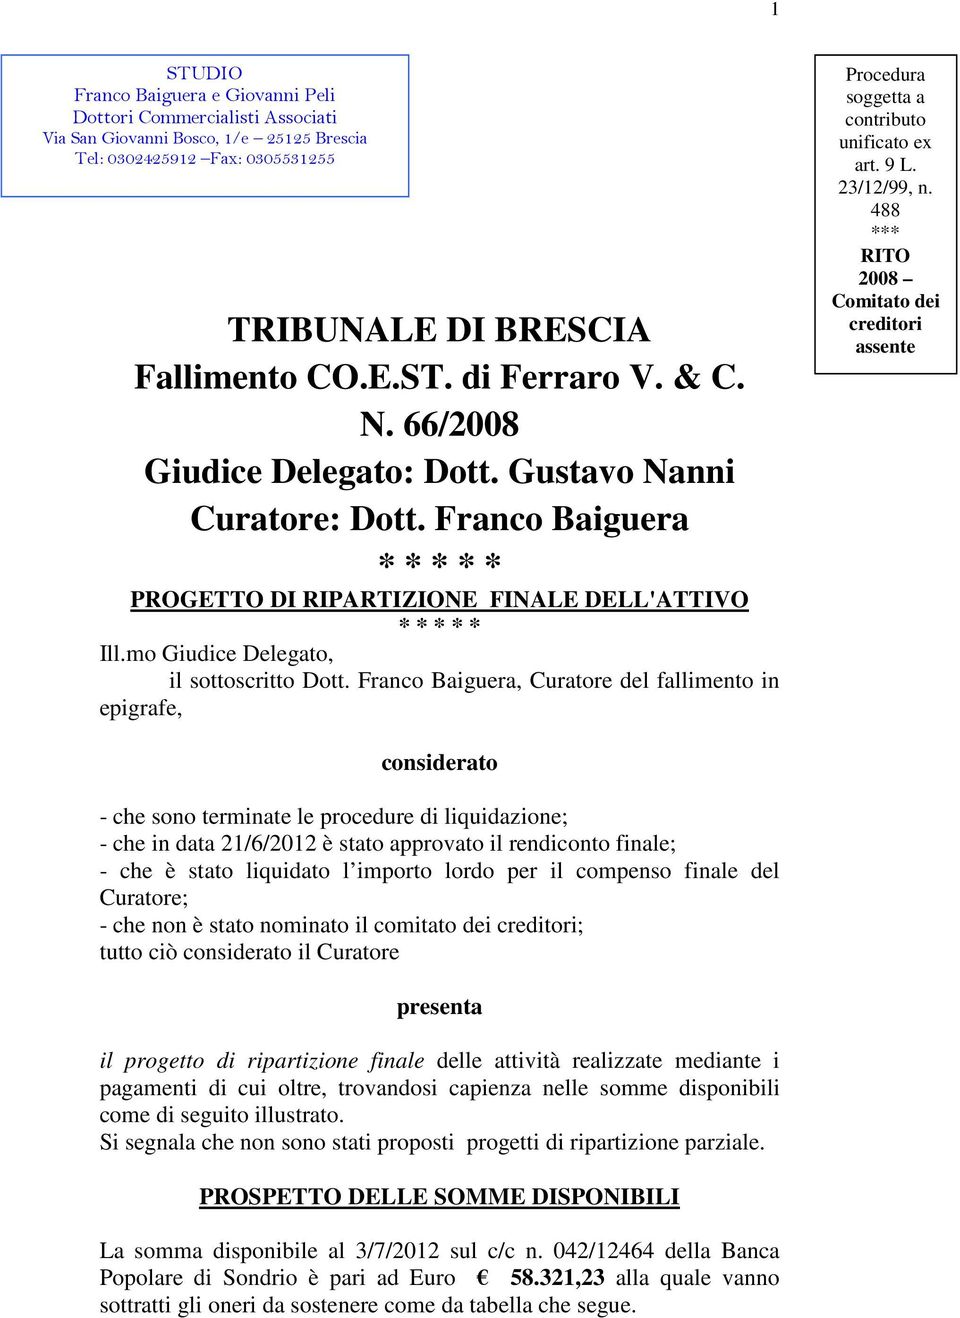 Franco Baiguera, Curatore del fallimento in epigrafe, Procedura soggetta a contributo unificato ex art. 9 L. 23/12/99, n.